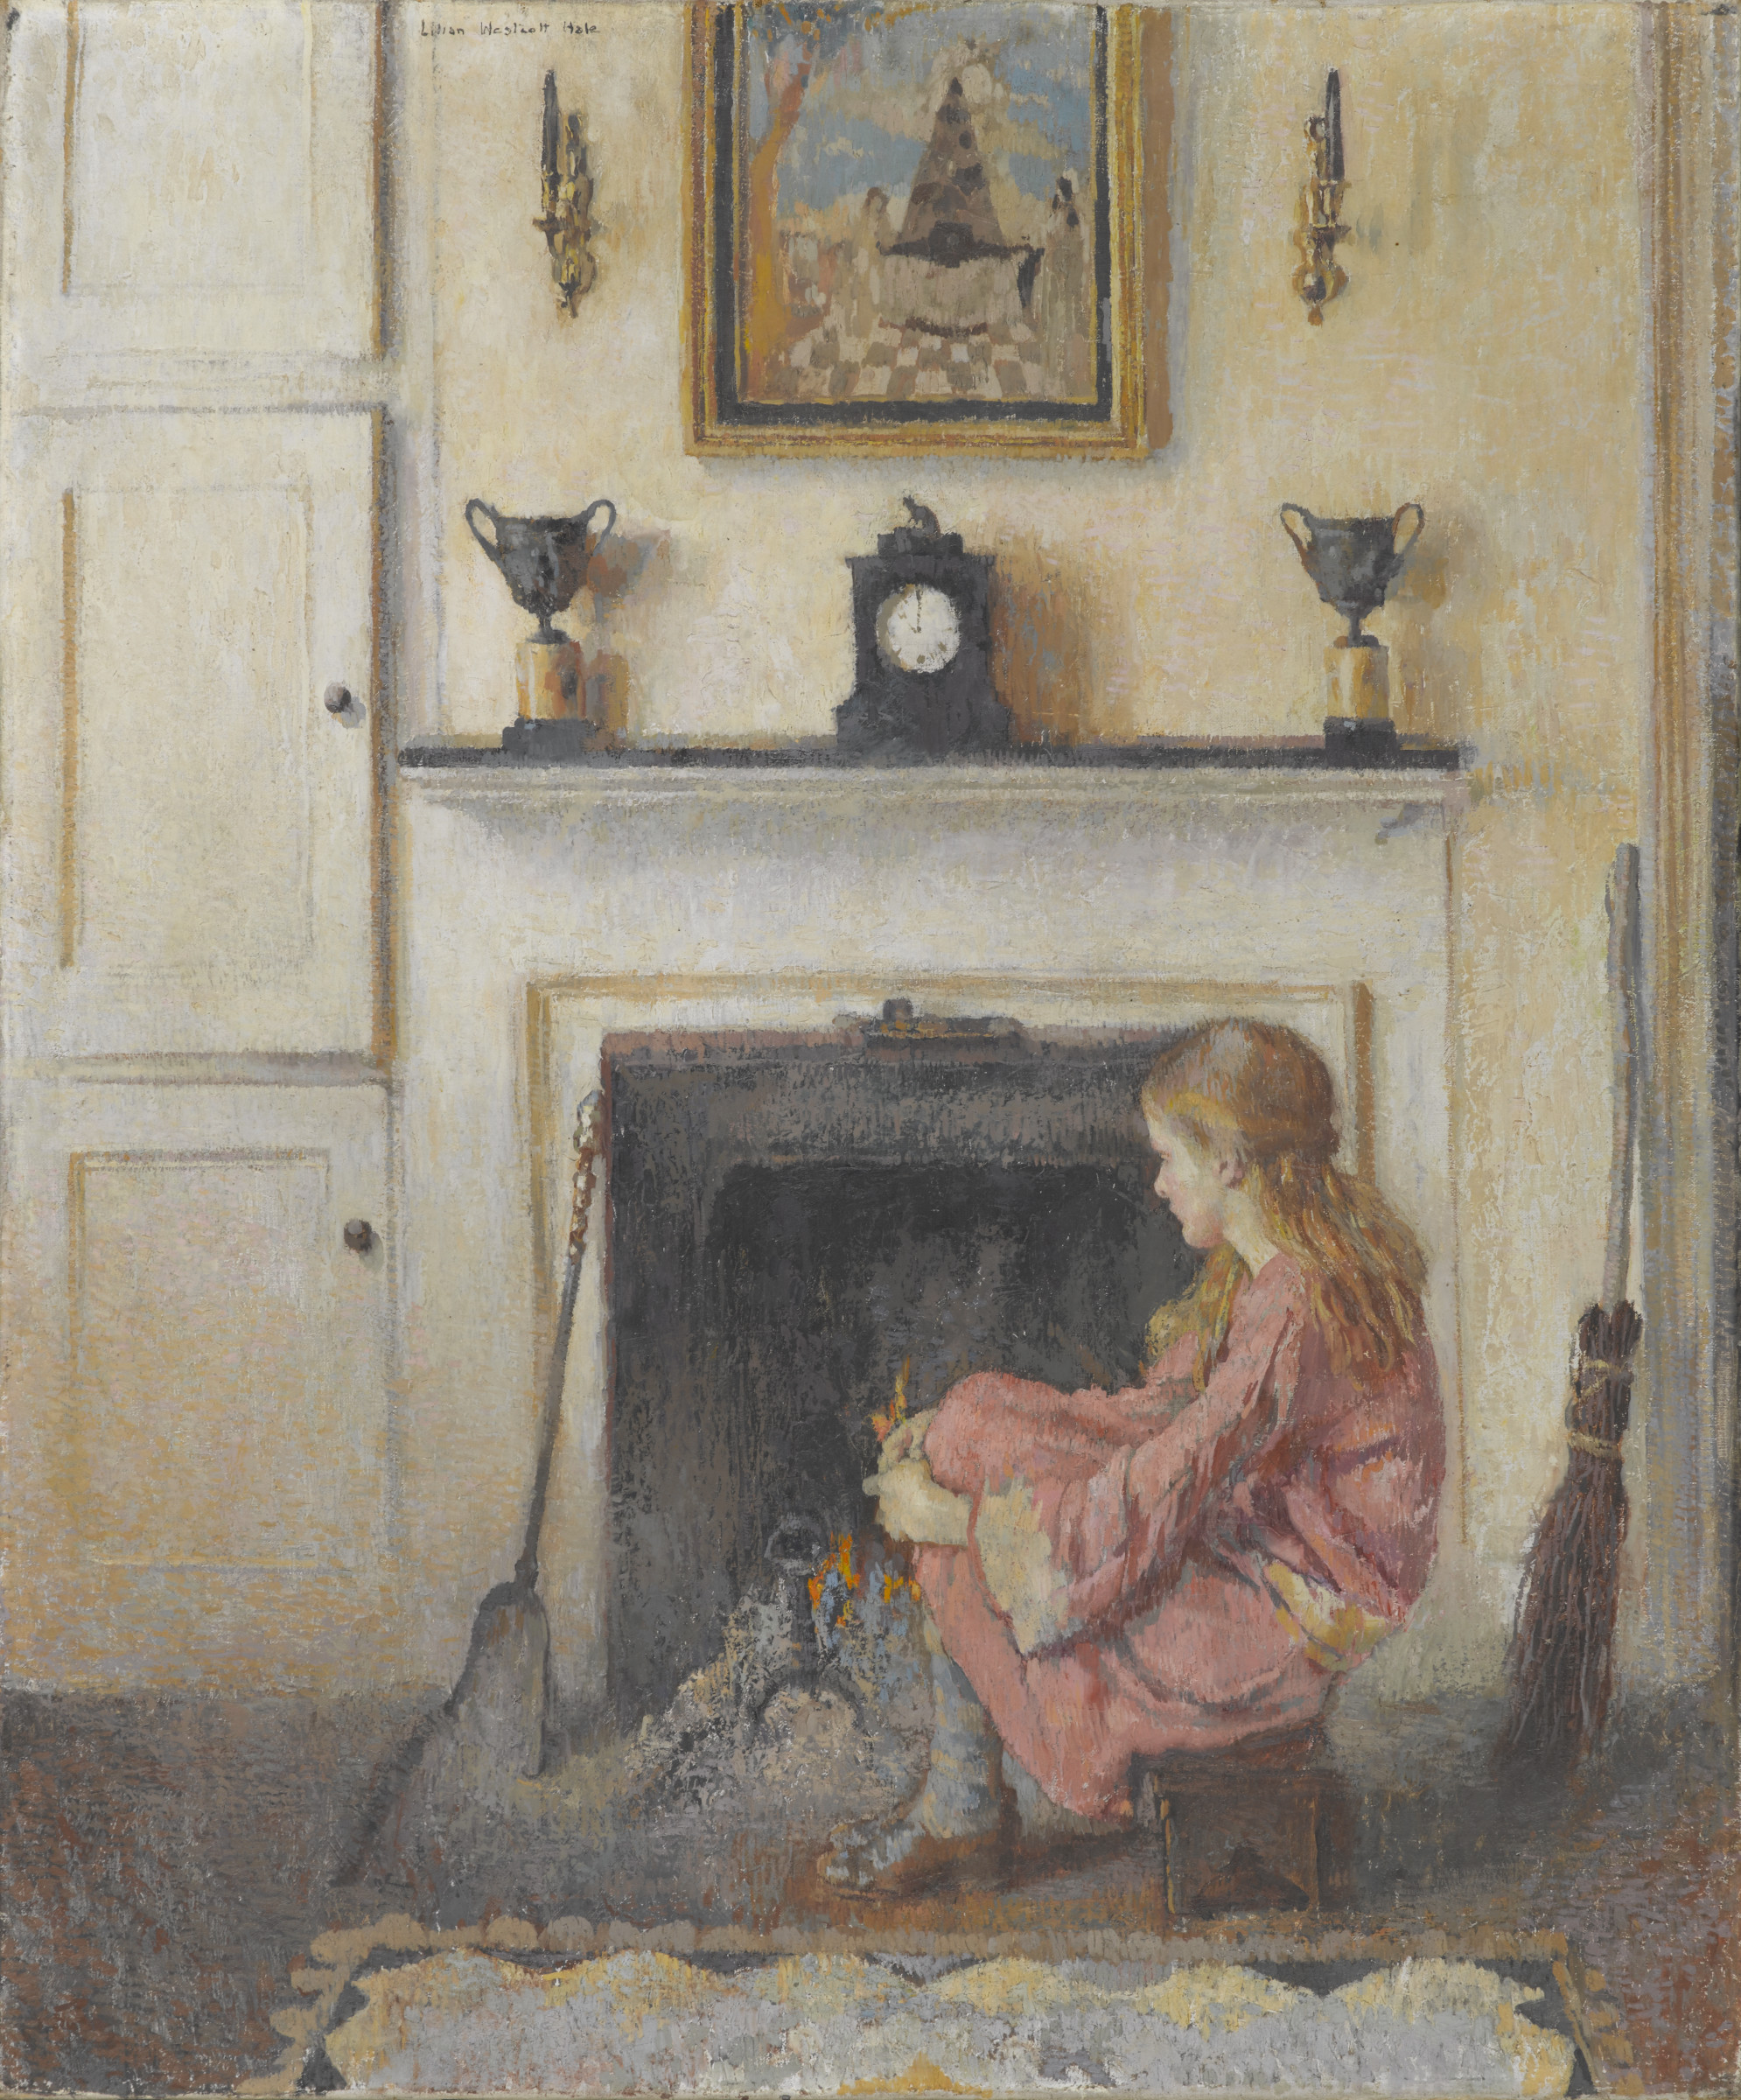 Alice ül a tűz mellett by Lilian Westcott Hale - 1925 - 91.4 x 76.2 cm 